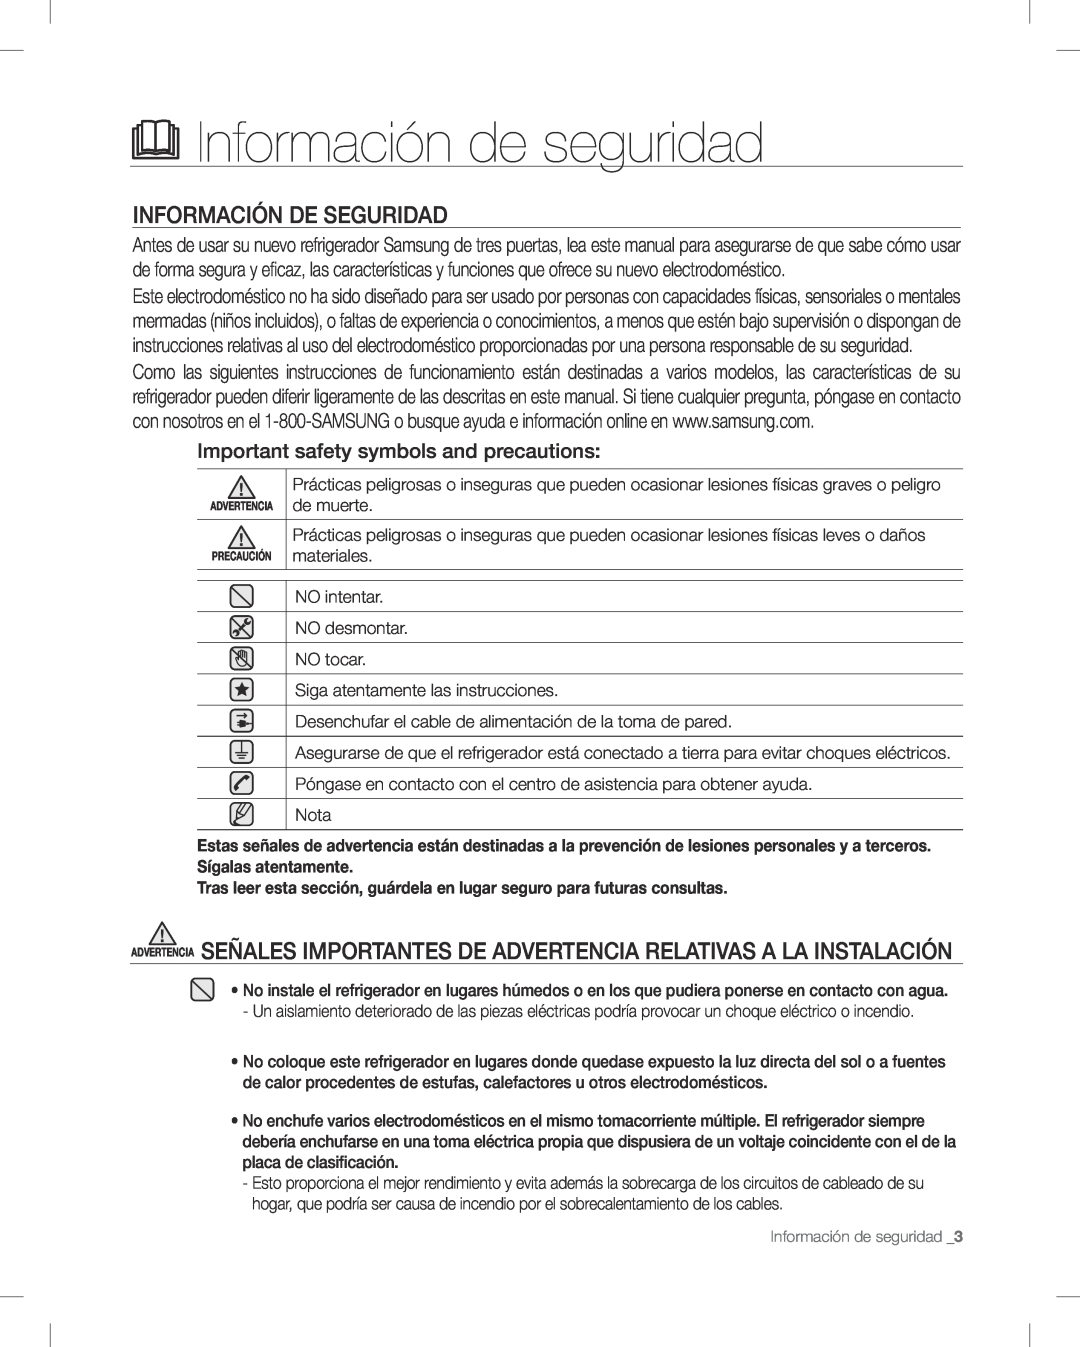 Samsung RF268AB user manual Información de seguridad, INFORMACIóN DE SEGURIDAD, Important safety symbols and precautions 